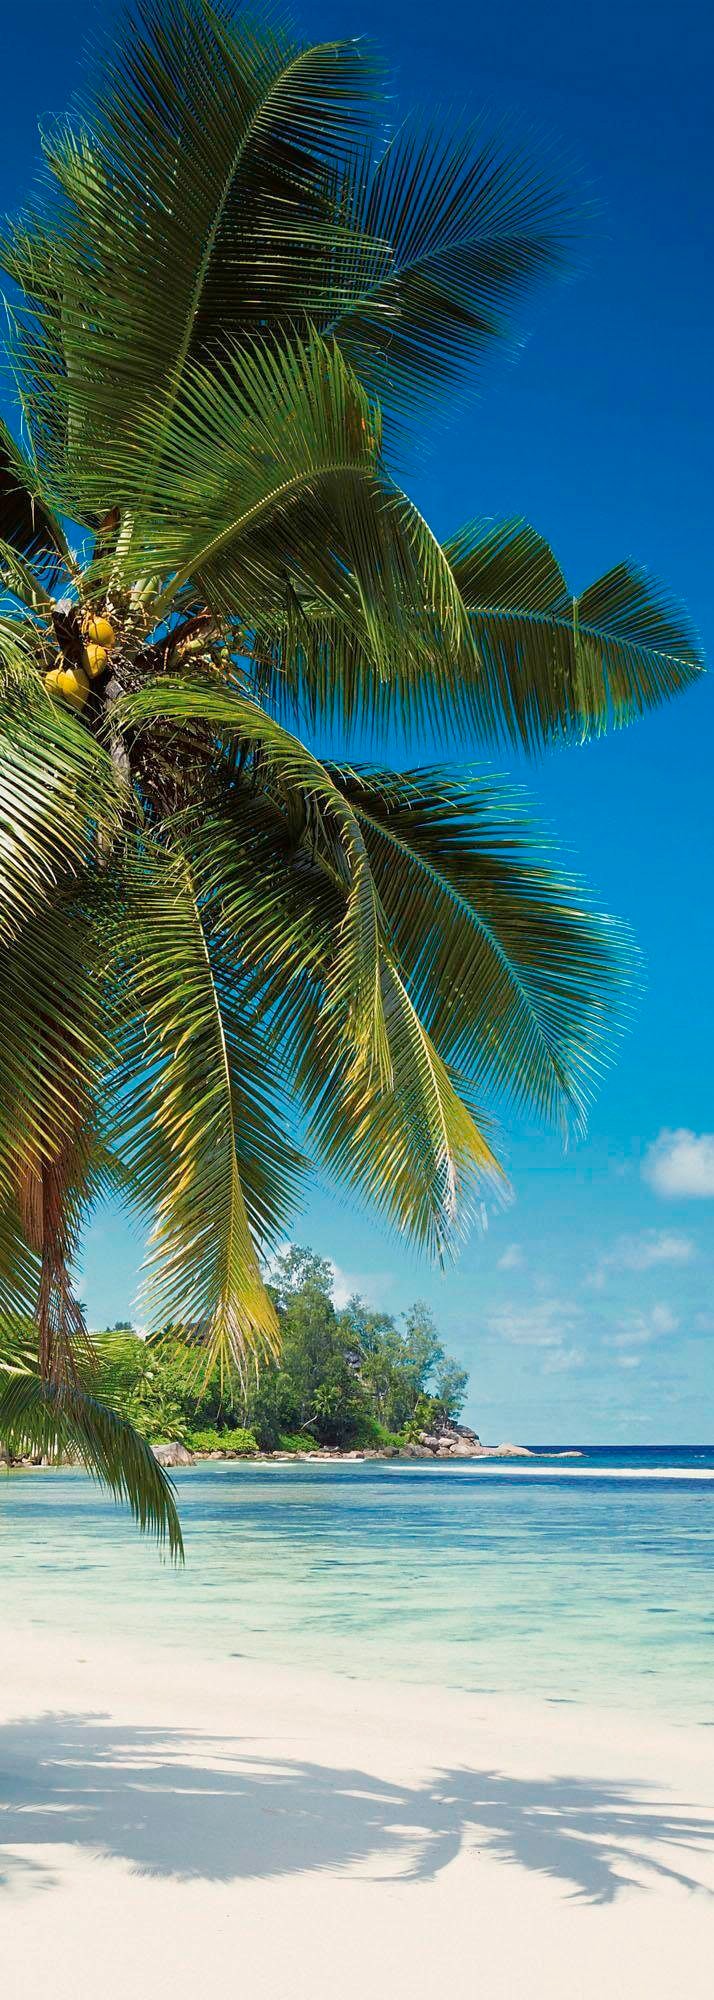 Komar Vliestapete »Coconut Bay«, 100x280 cm (Breite x Höhe), Vliestapete, 100 cm Bahnbreite